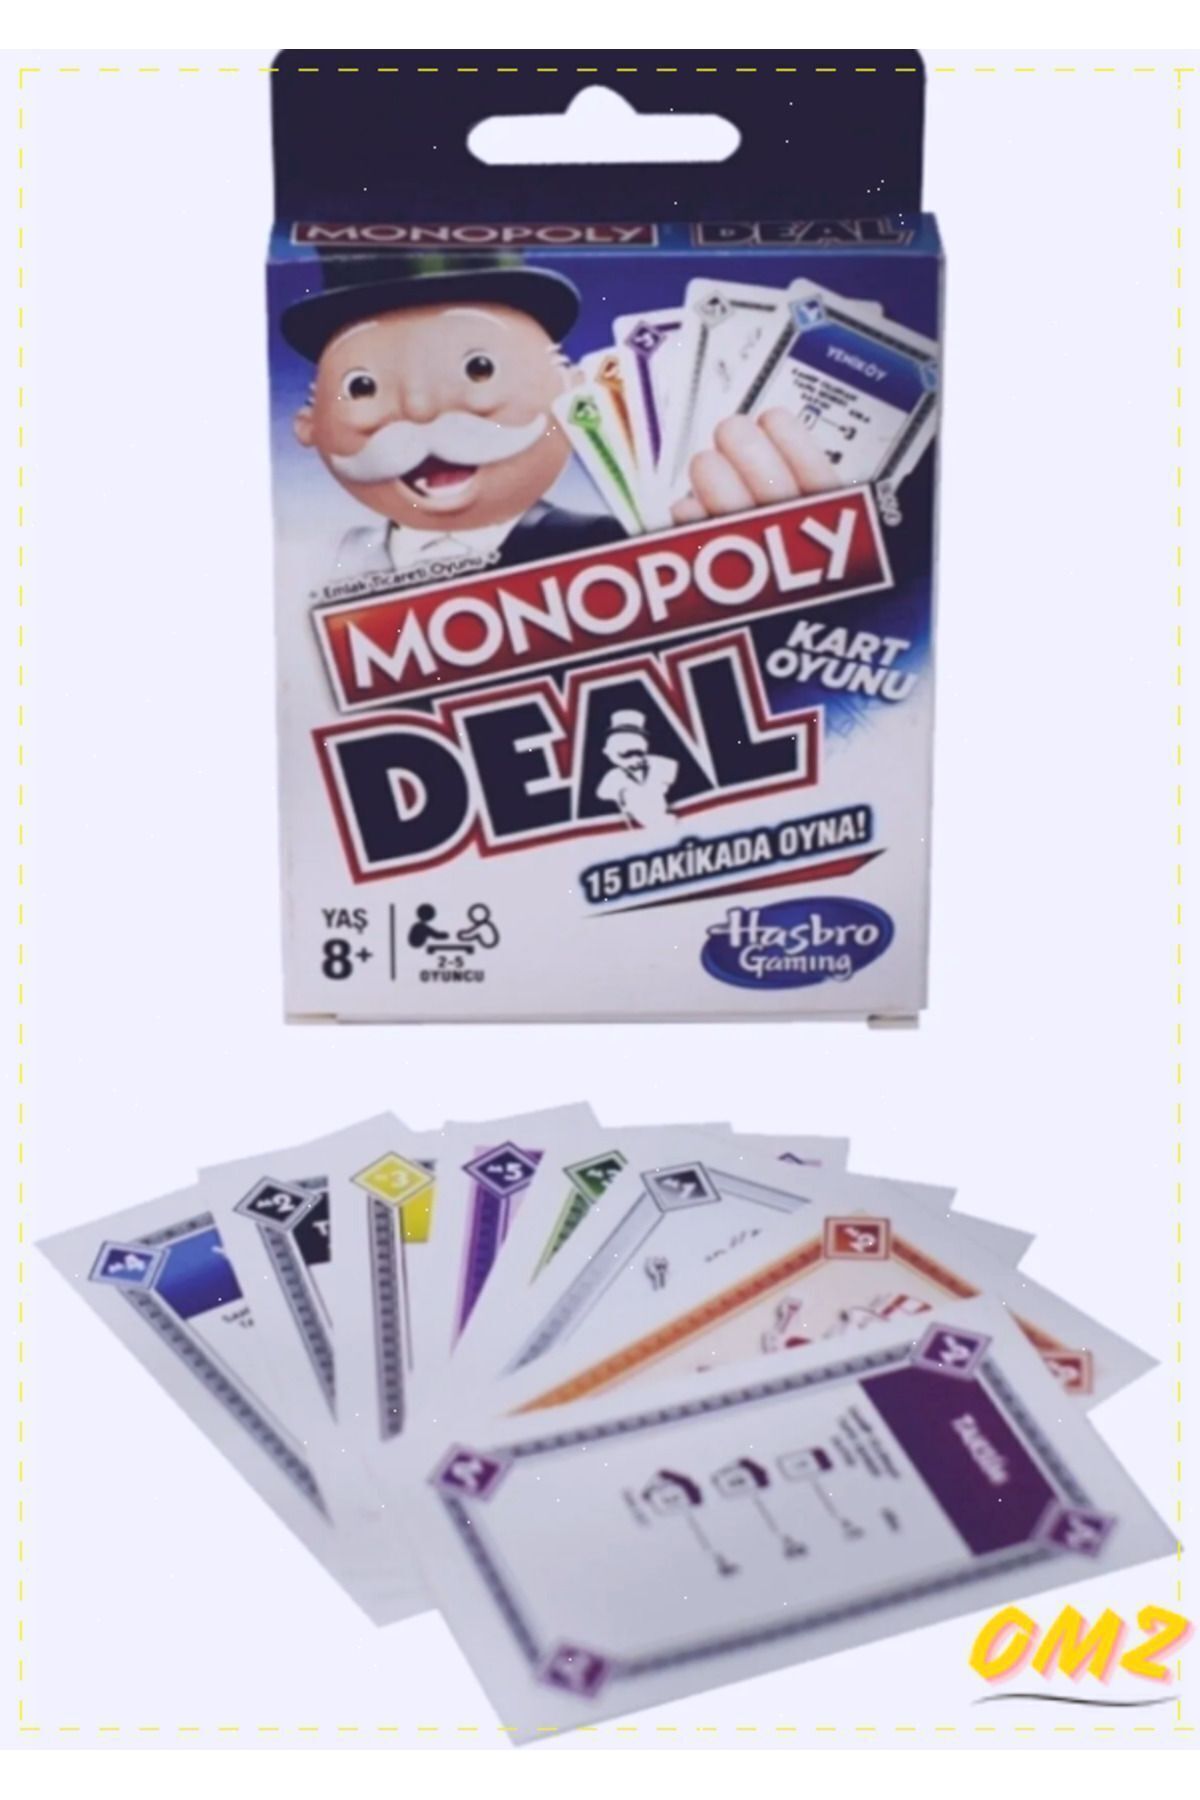 OMZ Monopoly Ve Anlat Bakalım 2 Kız Cocuk Erkek Cocuk Oyuncak Egitici Oyuncak Erkek Kız Cocuk Oyuncakla